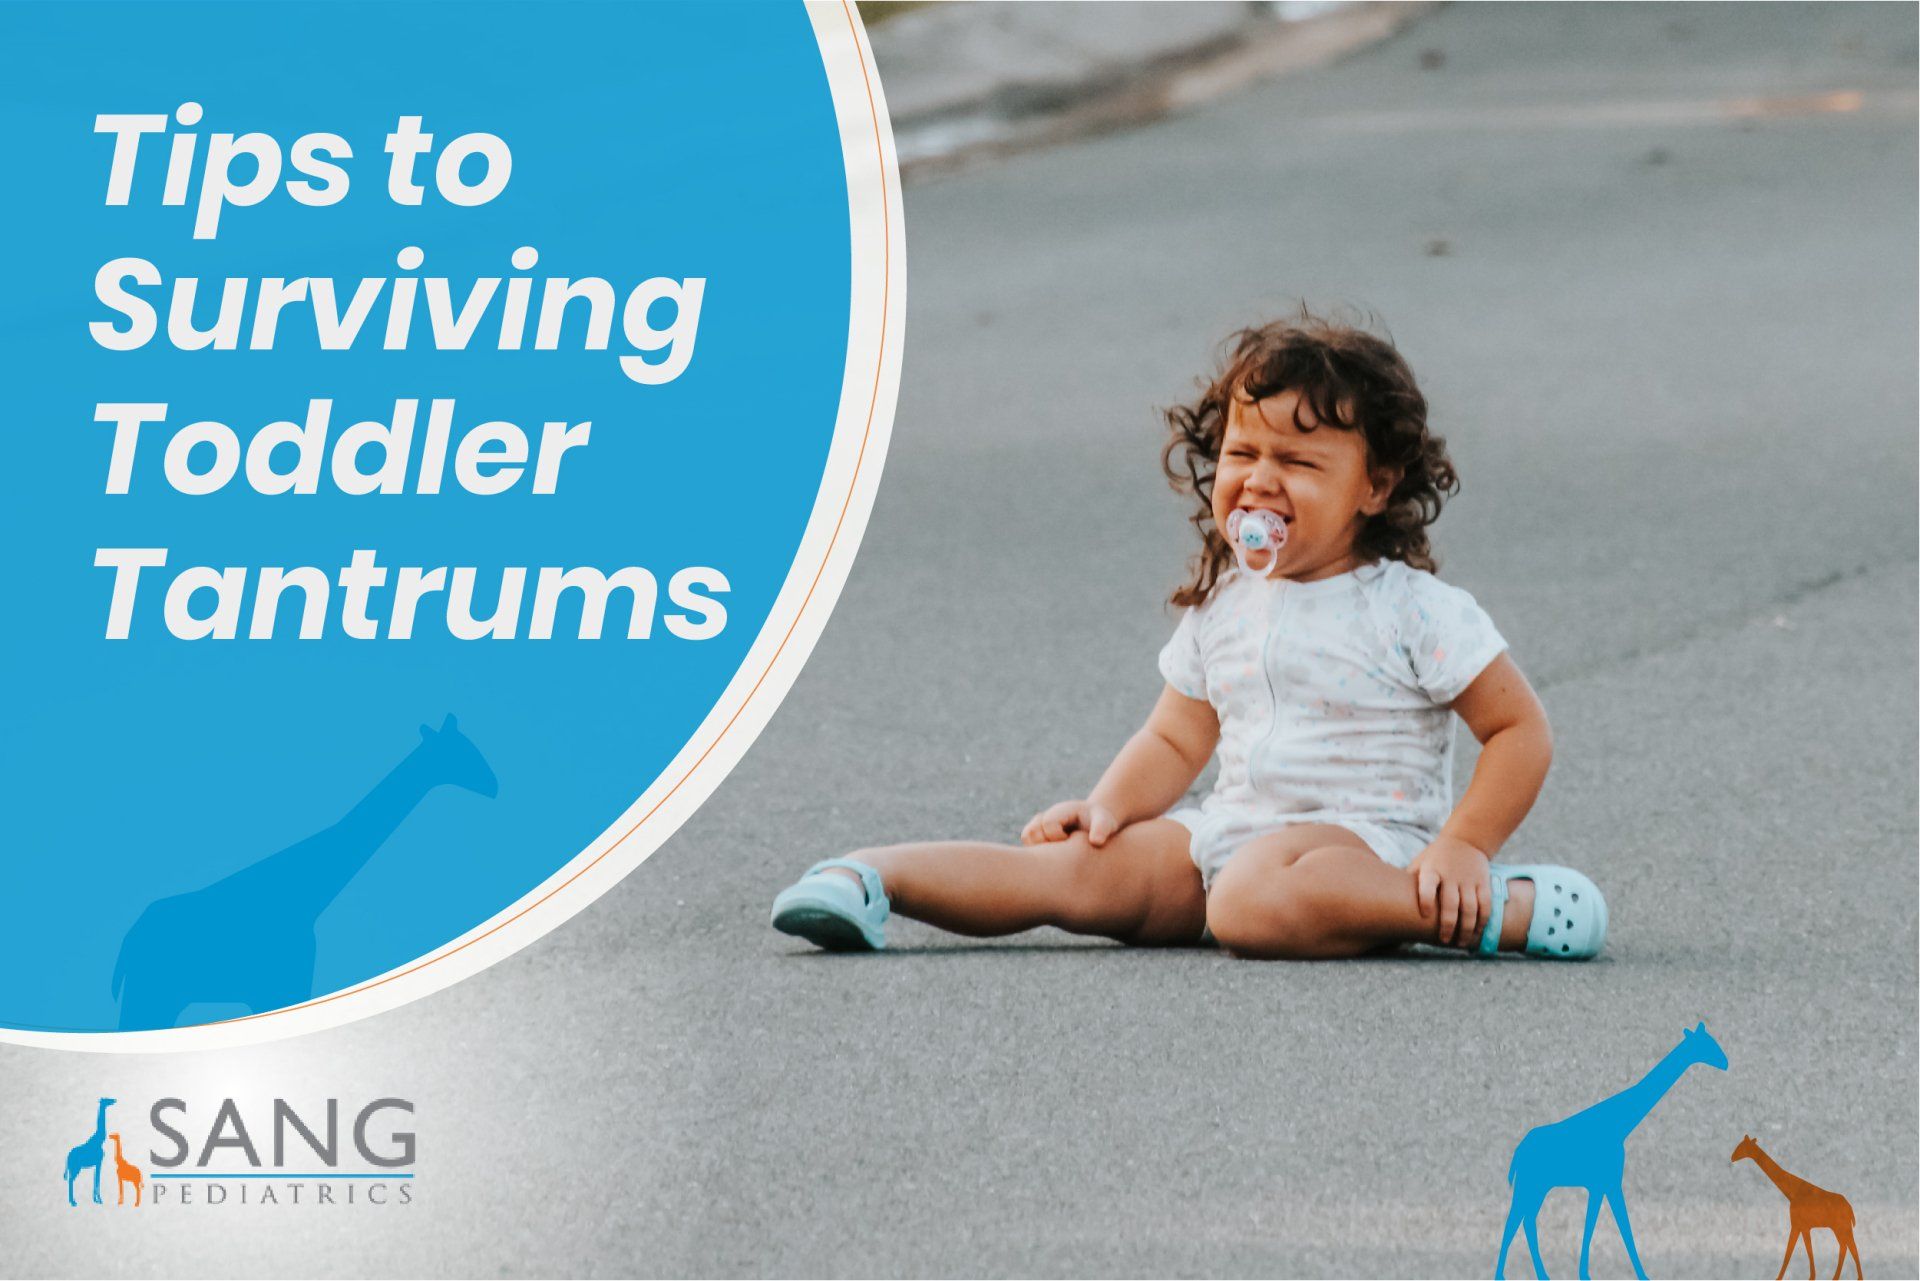 Tips to Surviving Toddler Tantrums